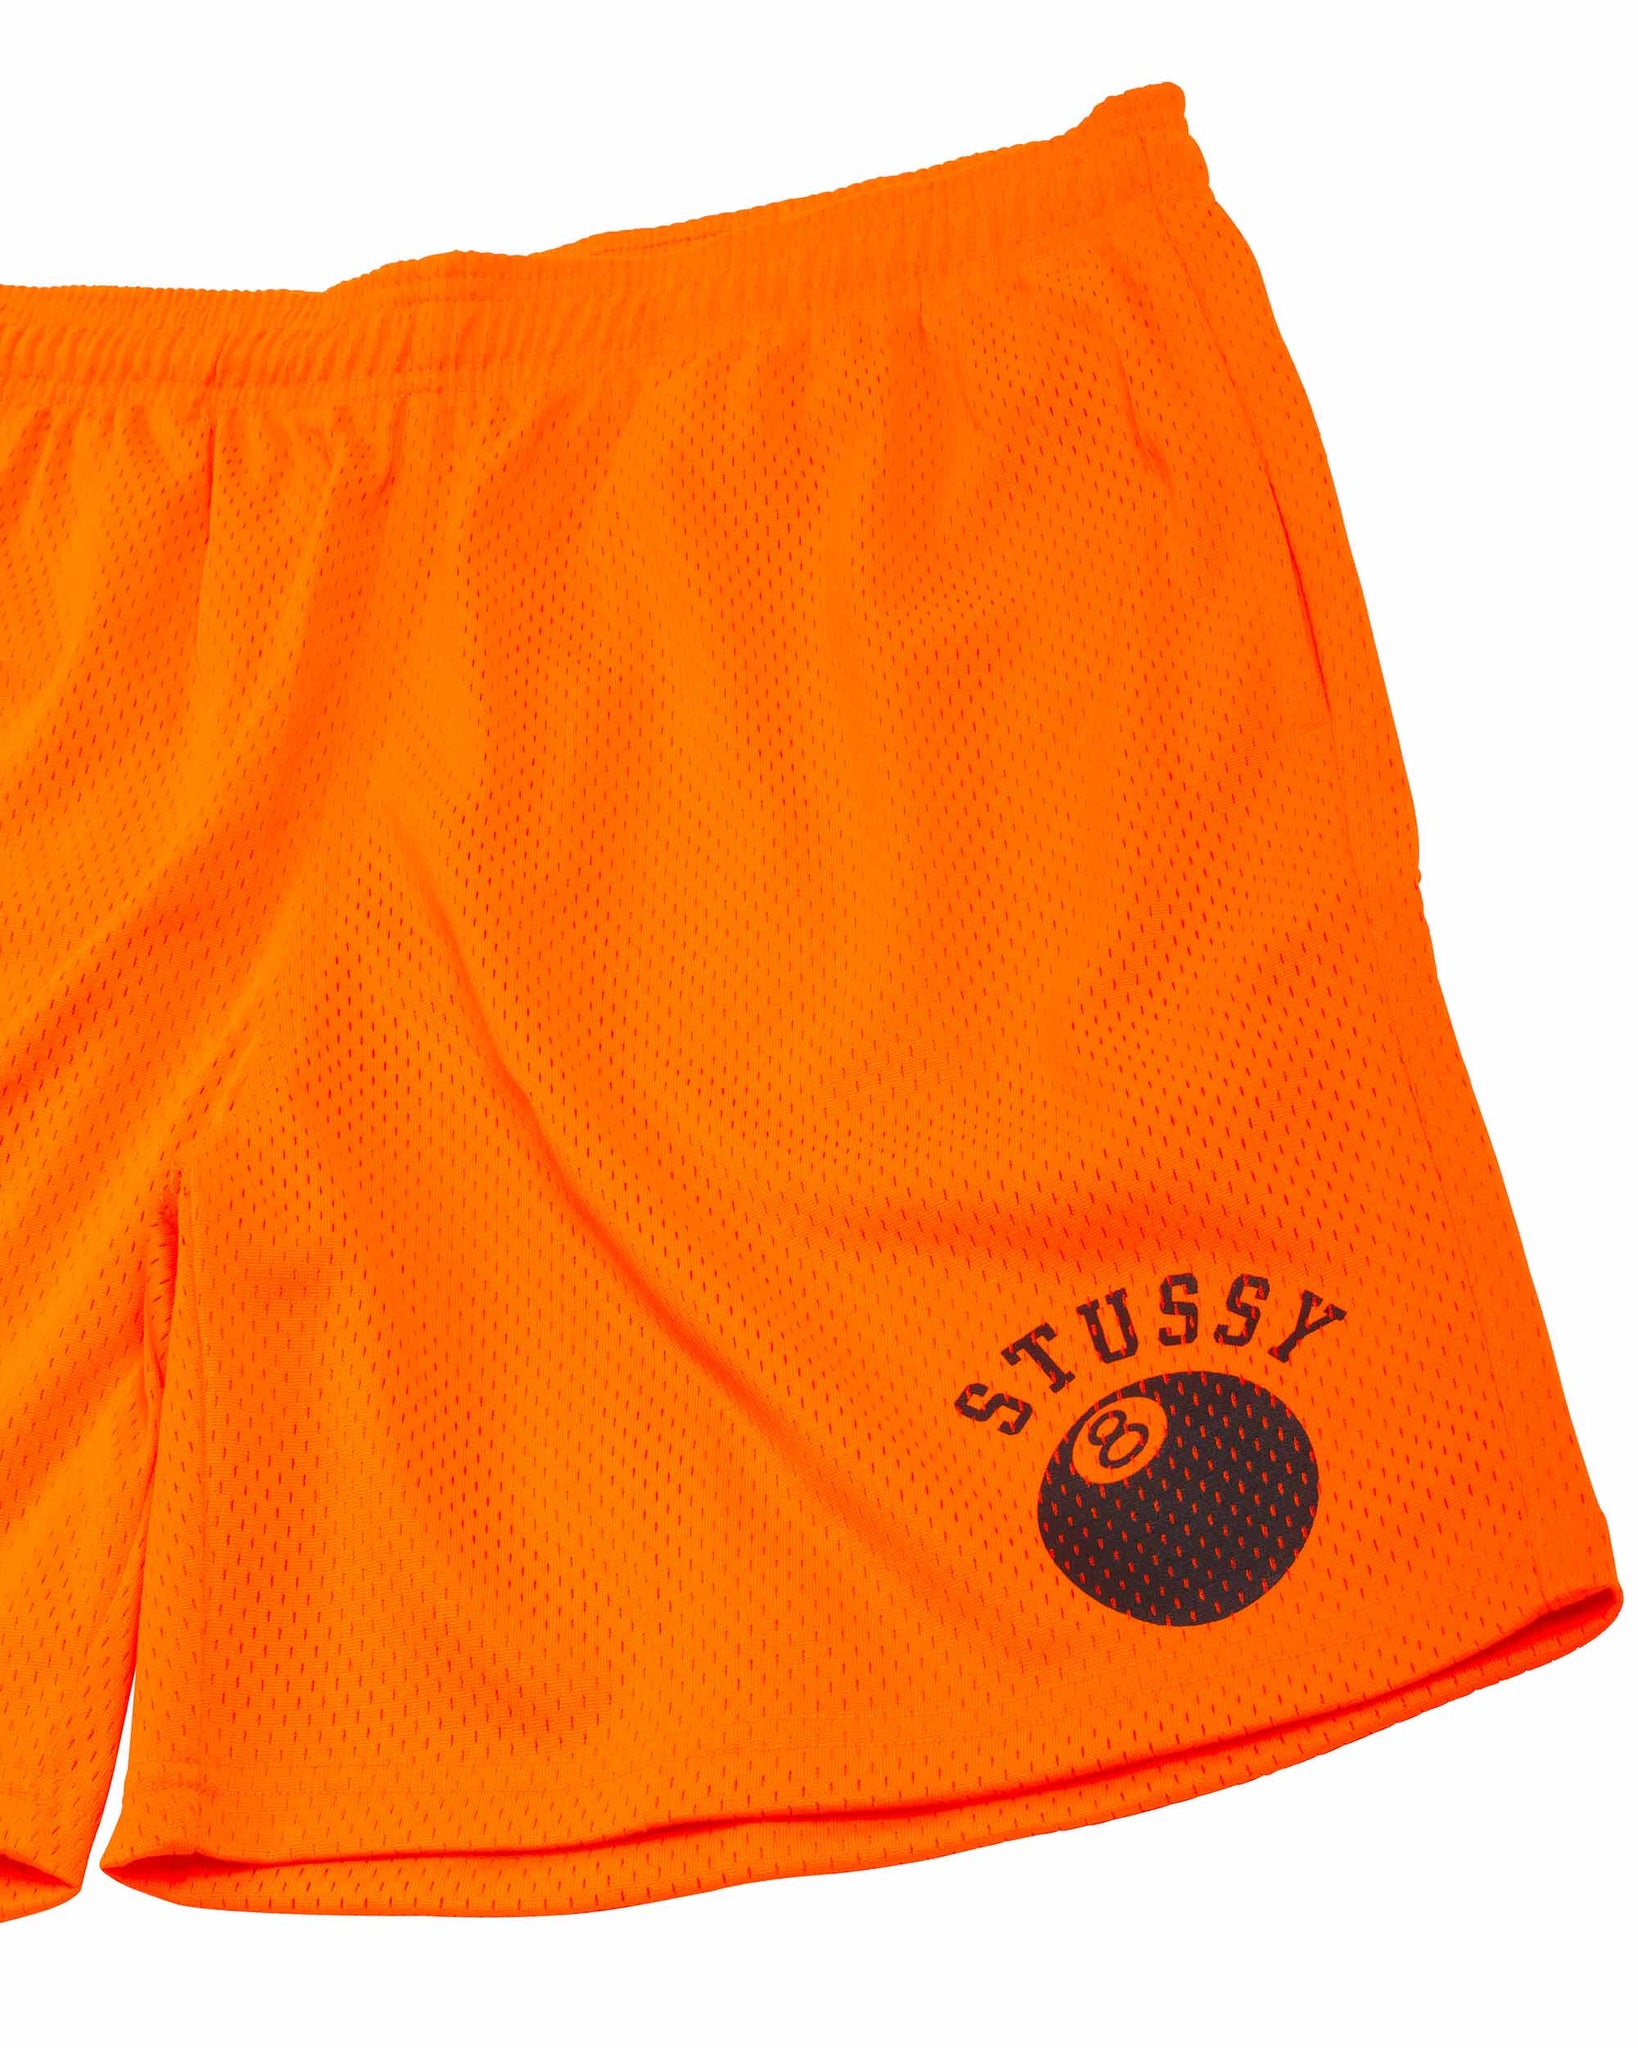 Stüssy 8-Ball Mesh Short Orange Details